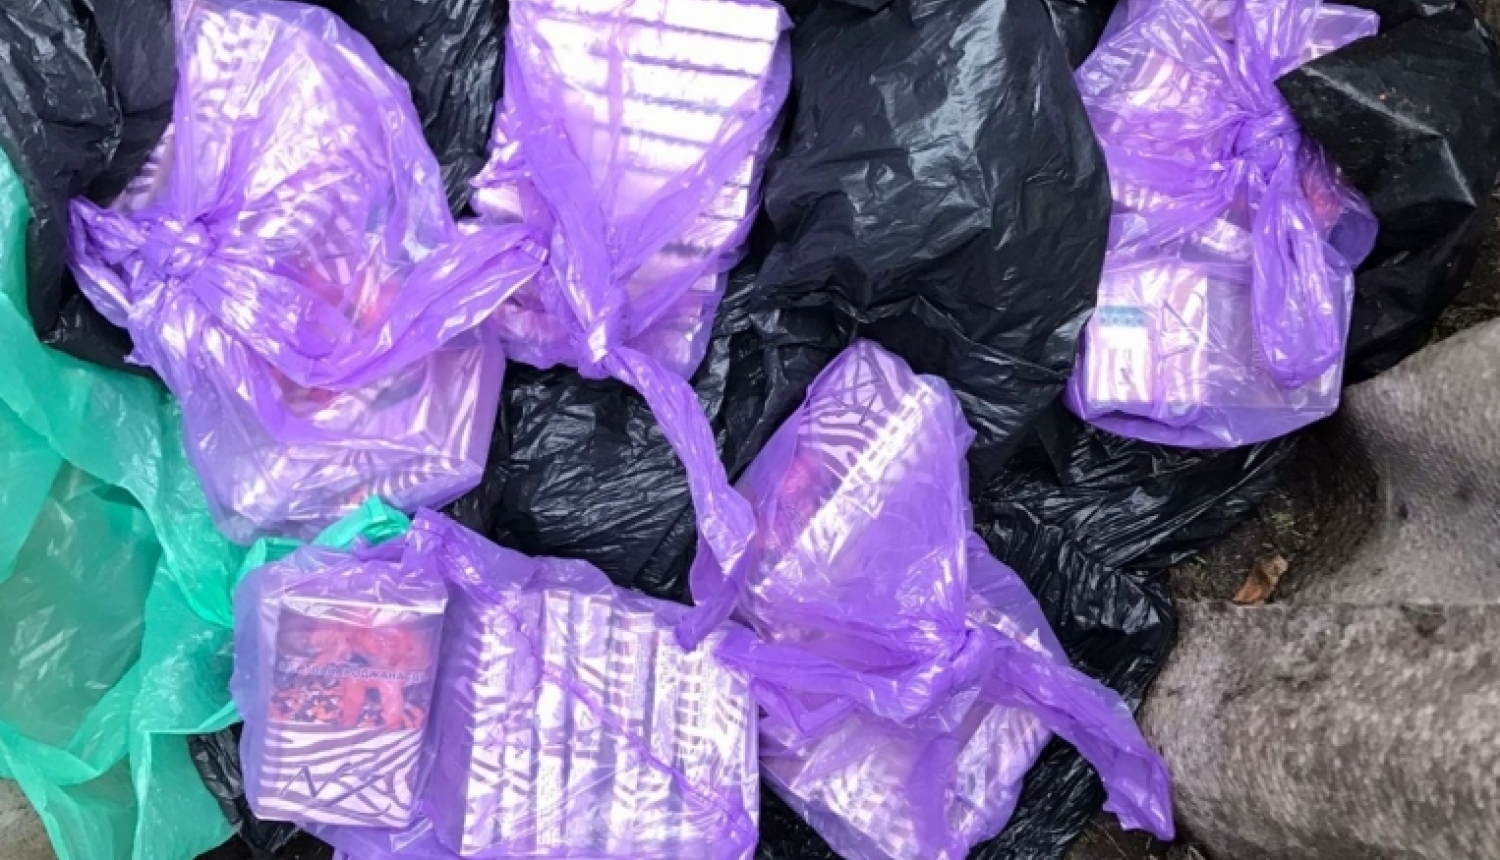 uz zemes redzami lillā plastmasas maisos iepakoti nelegālo cigarešu bloki